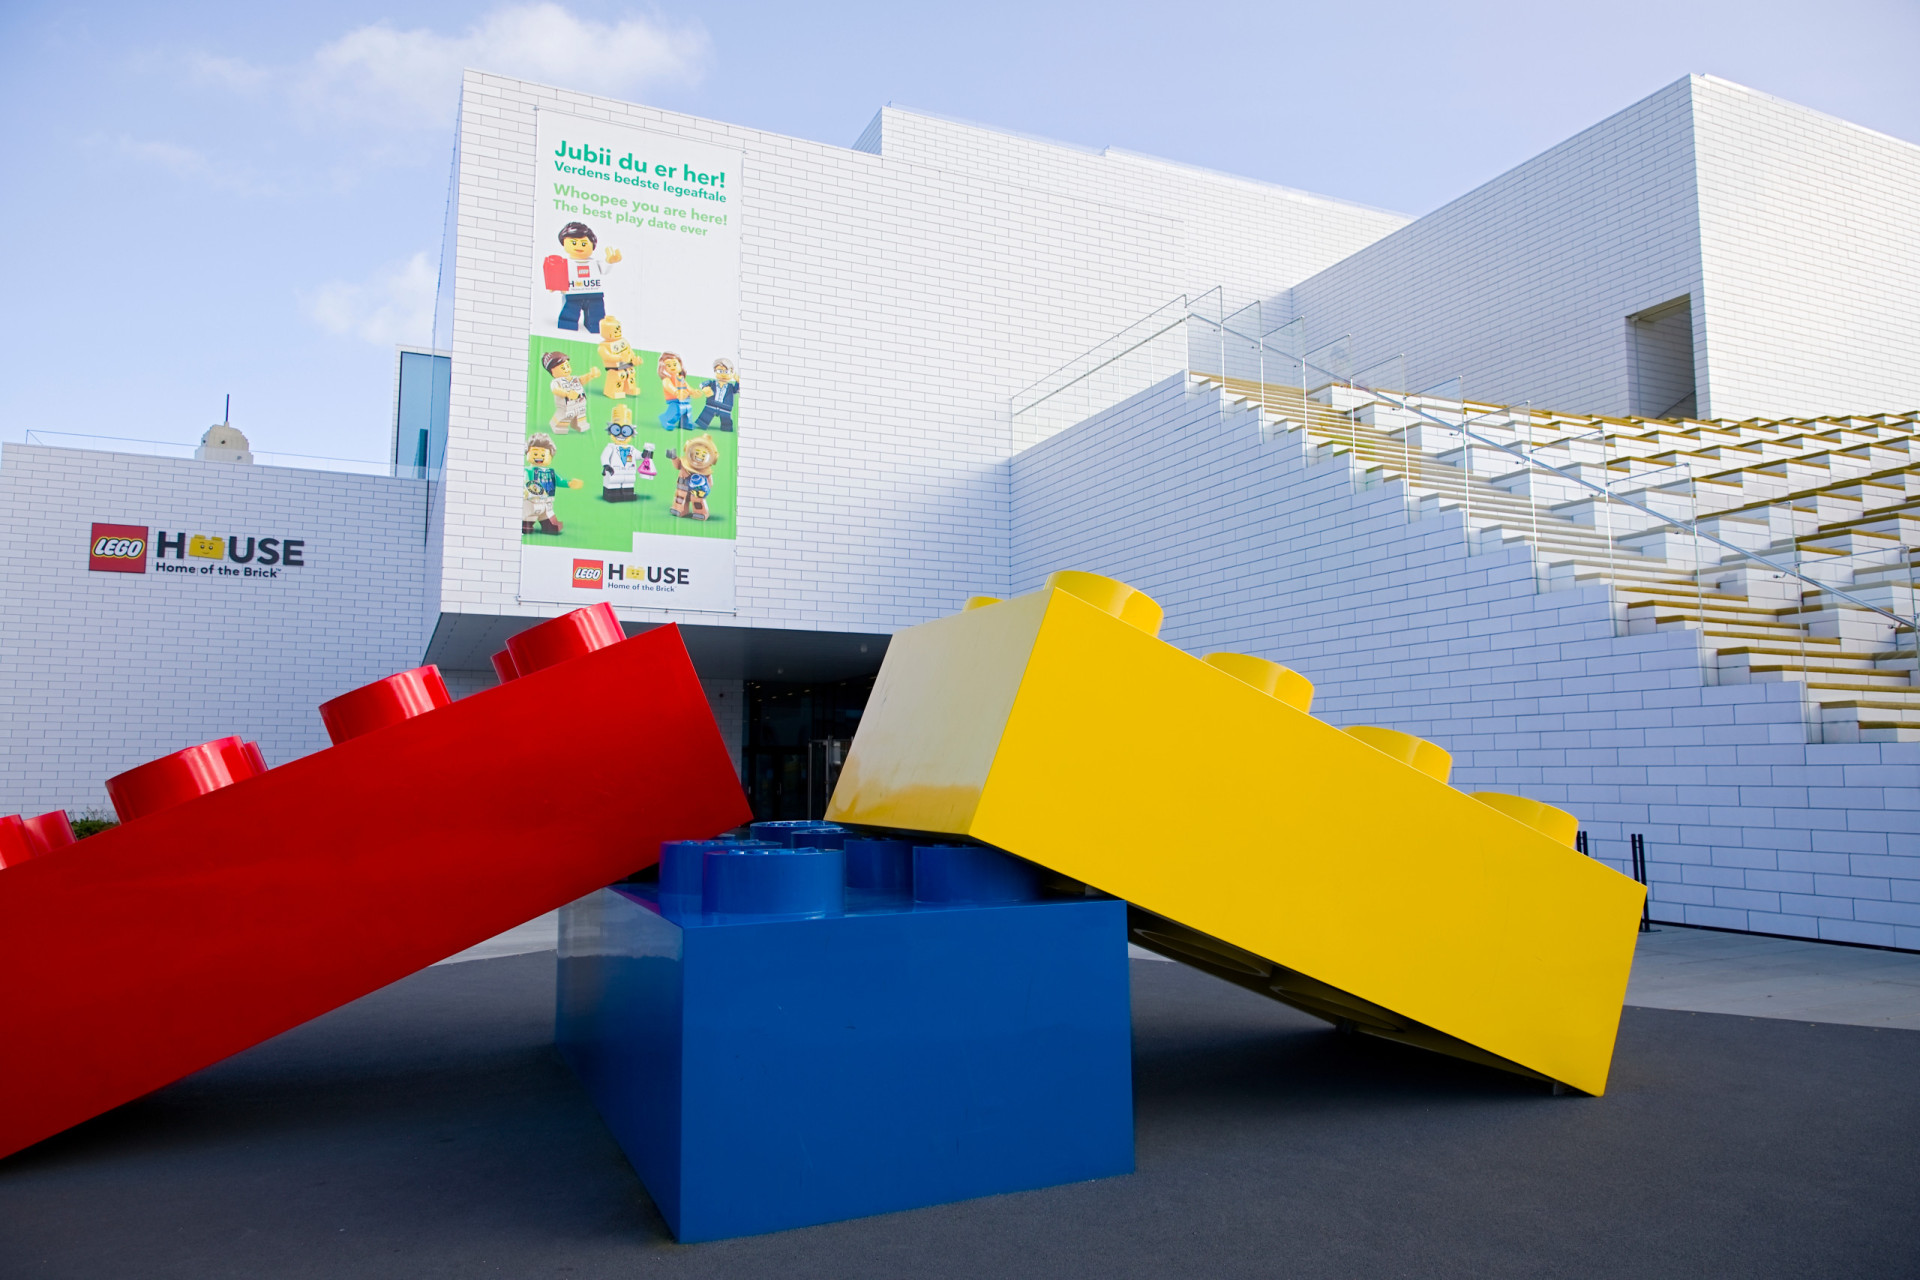 <p>L'entreprise Lego fondée en 1932 est devenue l'une des plus grandes du monde, et Lego House n'est autre que le lieu de naissance de l'emblématique brique. Remplie de 25 millions de lego au total, les visiteurs peuvent construire tout ce qu'ils veulent au sein du bâtiment.</p><p><a href="https://www.msn.com/fr-fr/community/channel/vid-7xx8mnucu55yw63we9va2gwr7uihbxwc68fxqp25x6tg4ftibpra?cvid=94631541bc0f4f89bfd59158d696ad7e">Suivez-nous et accédez tous les jours à du contenu exclusif</a></p>